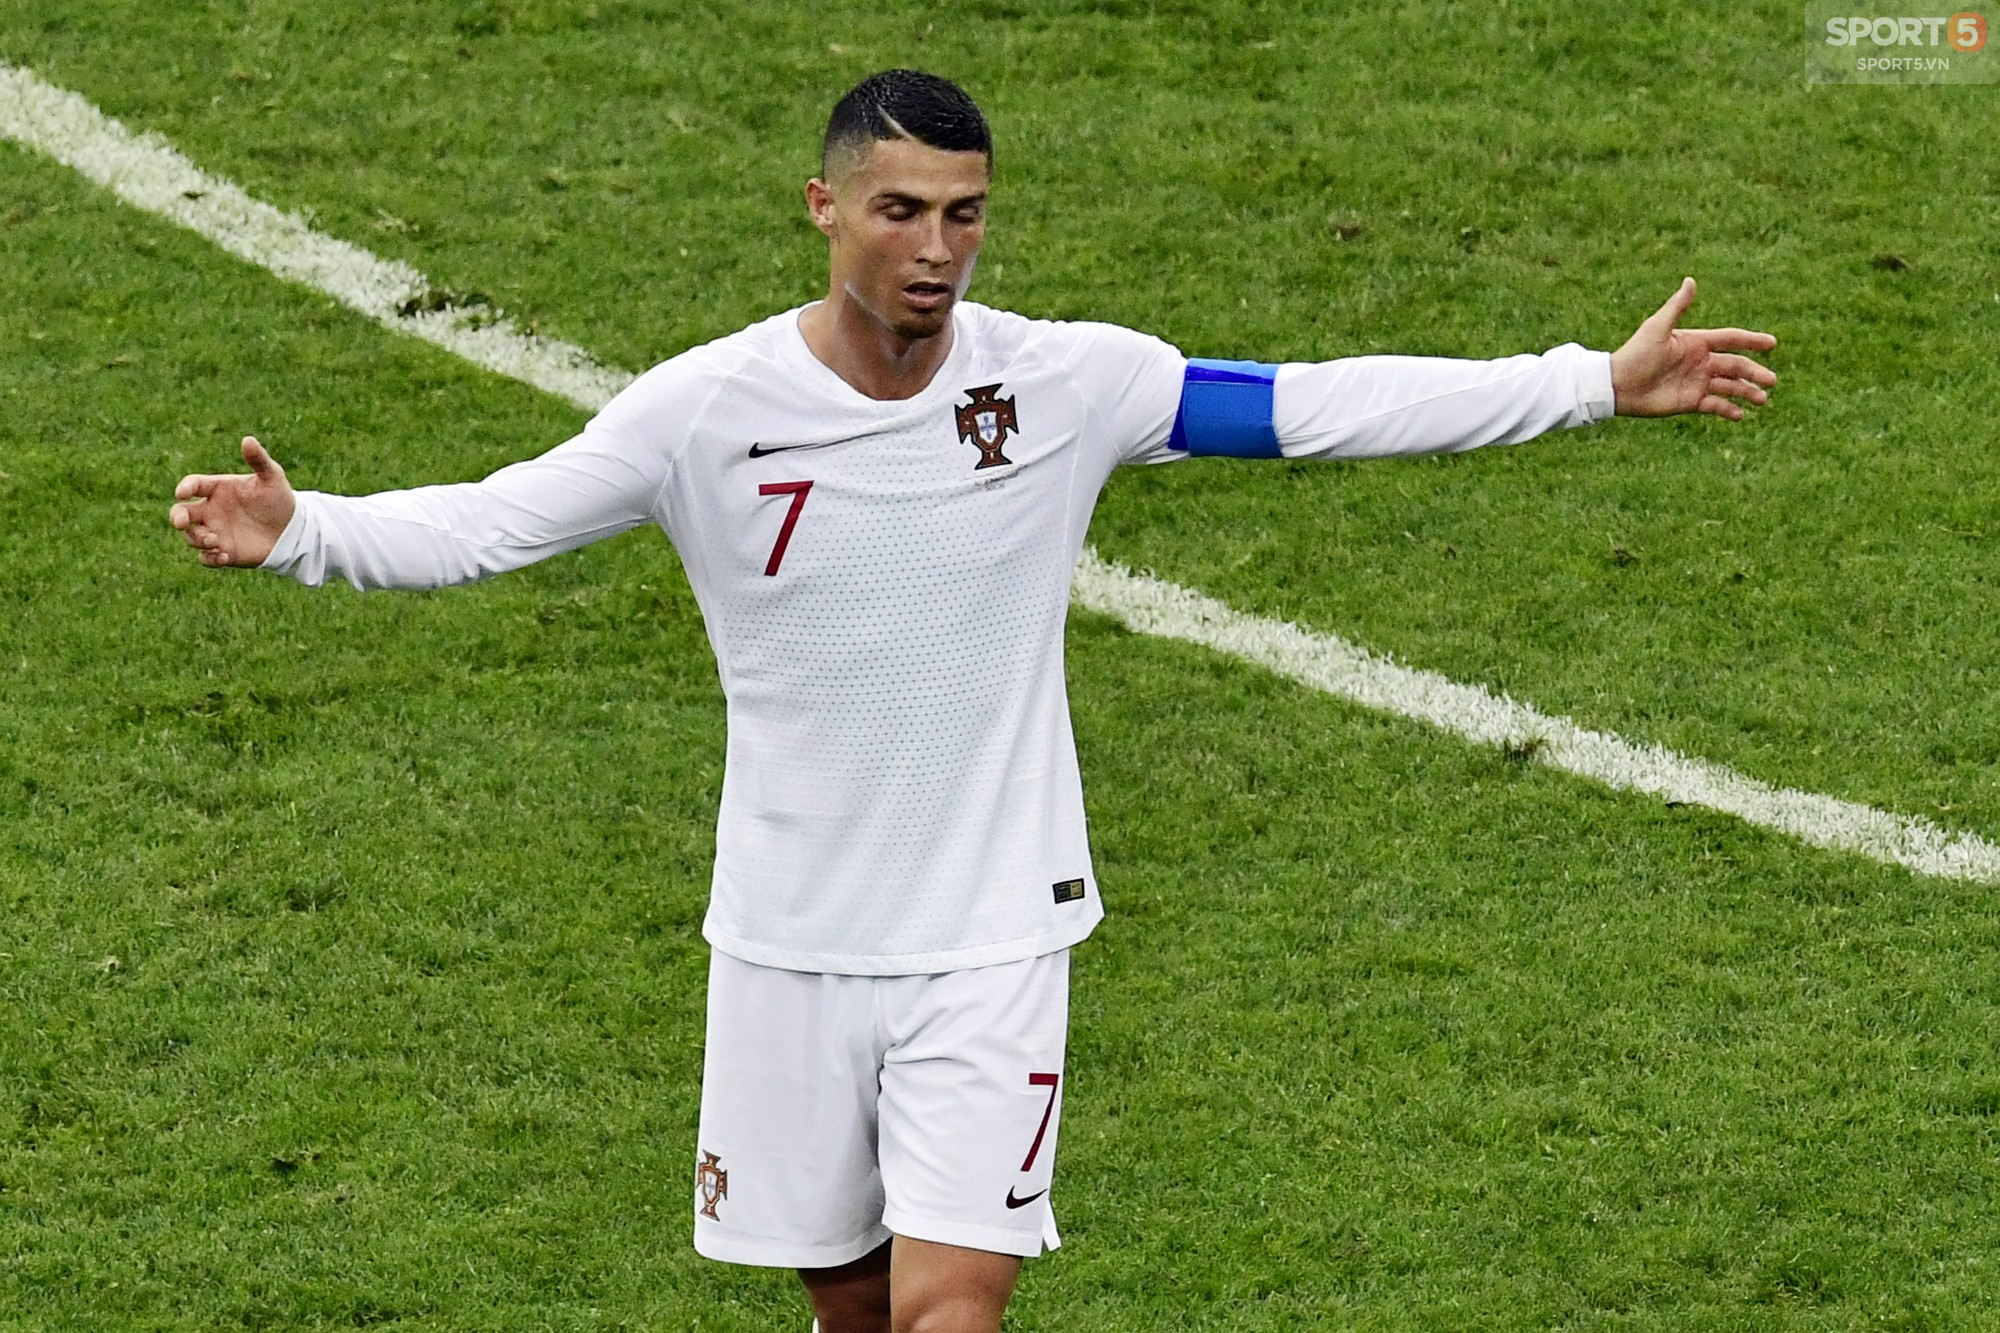 Chuyển nhượng mùa World Cup: Ronaldo không có quyền quyết định tương lai - Ảnh 1.